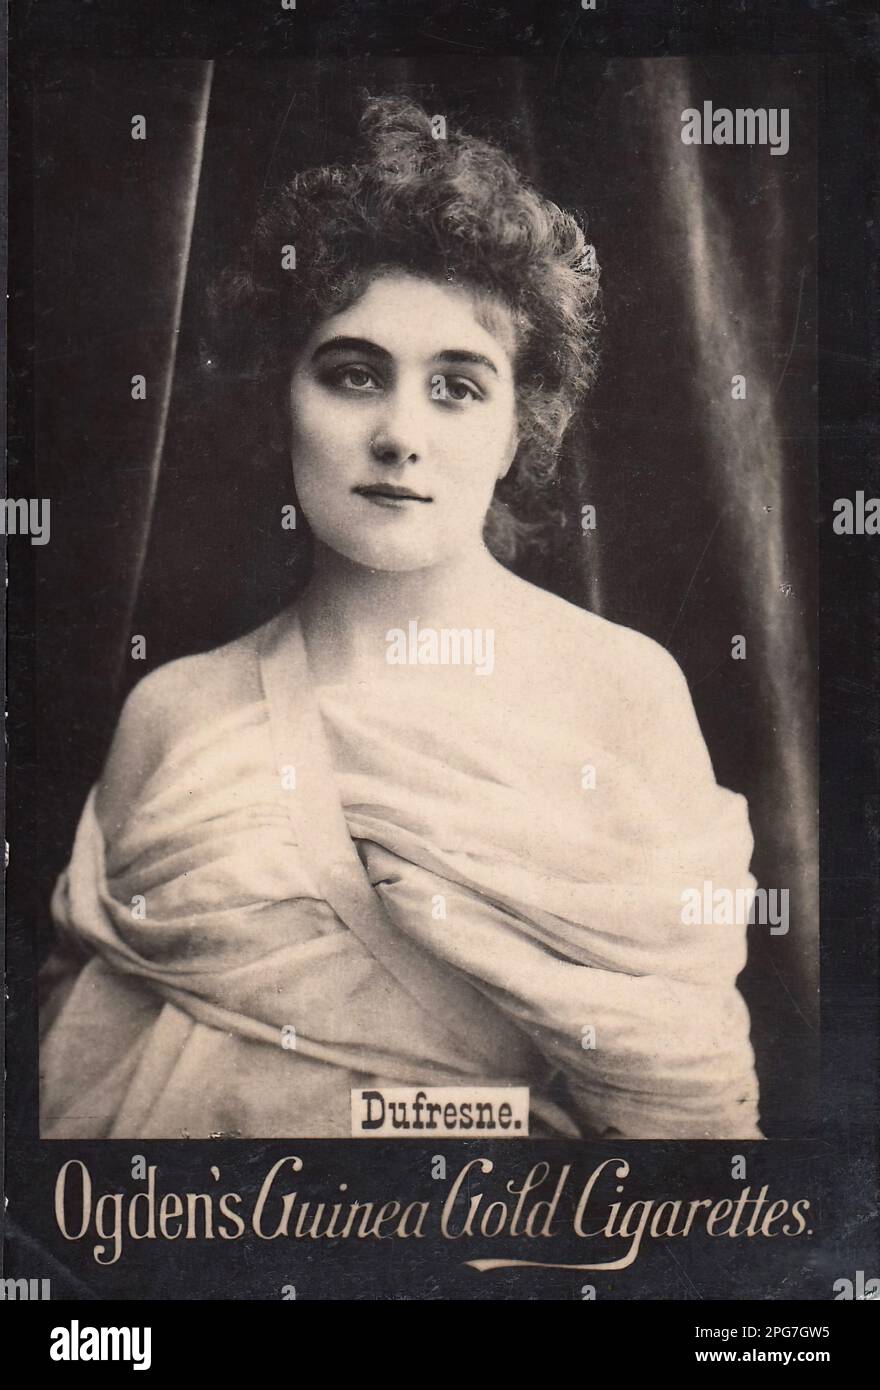 Porträt der Schauspielerin Dufresne - Oldtimer-Zigarettenkarte, Viktorianisches Zeitalter Stockfoto